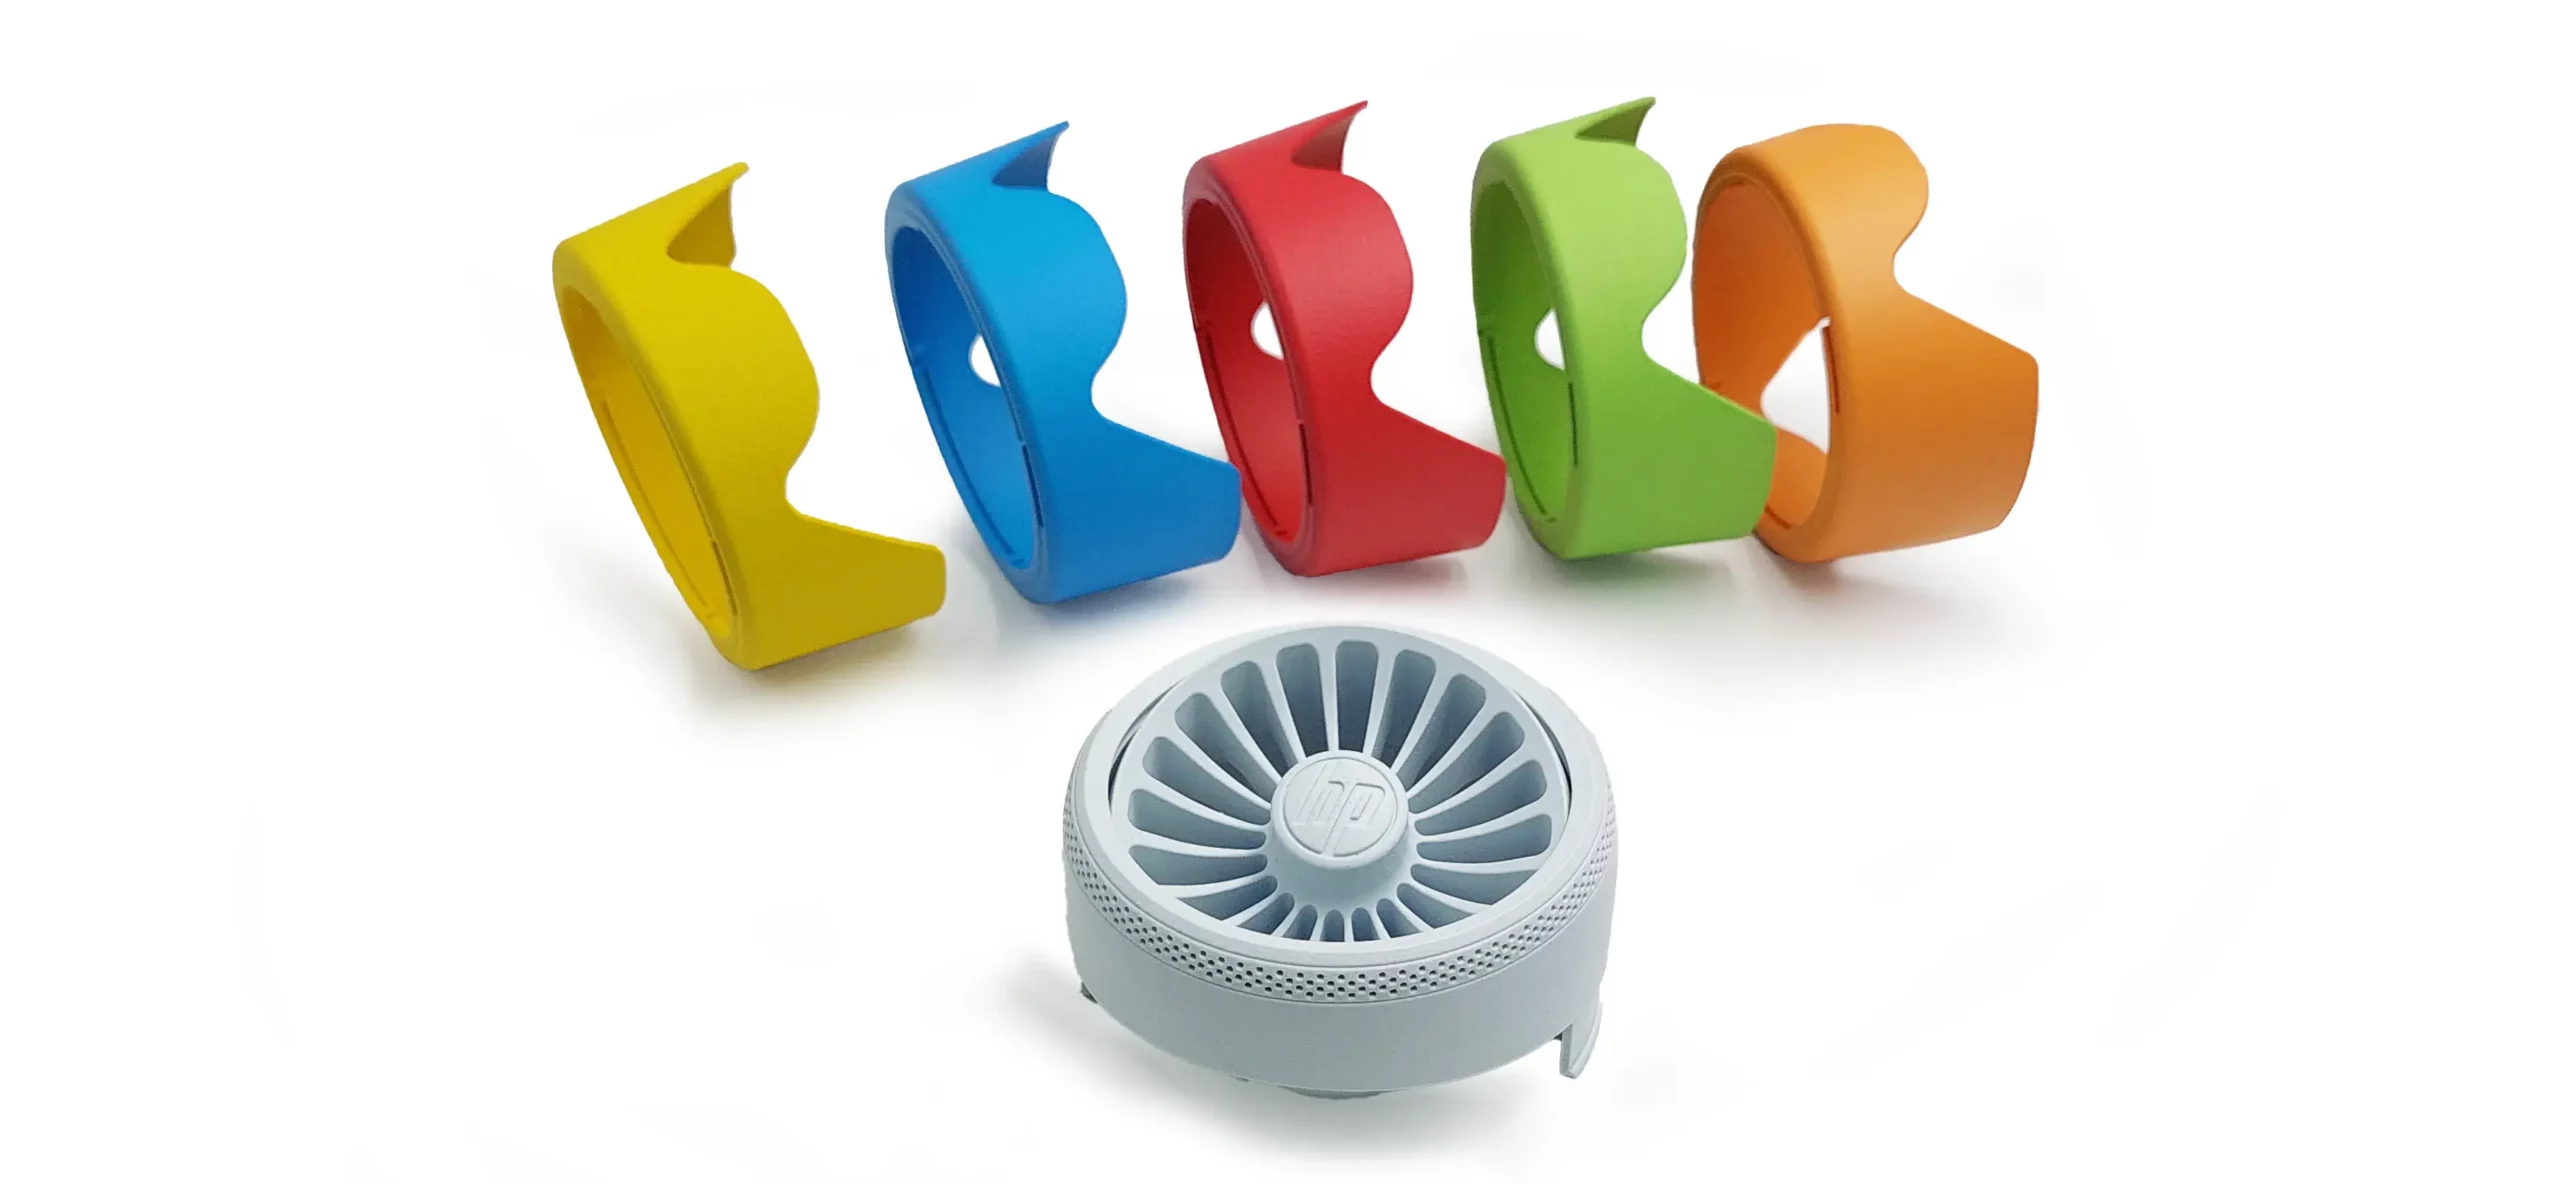 3D-gedruckter weißer Lüfter aus PA 12 W und bunt gefärbte Abdeckungen in gelb, blau, rot, grün und orange